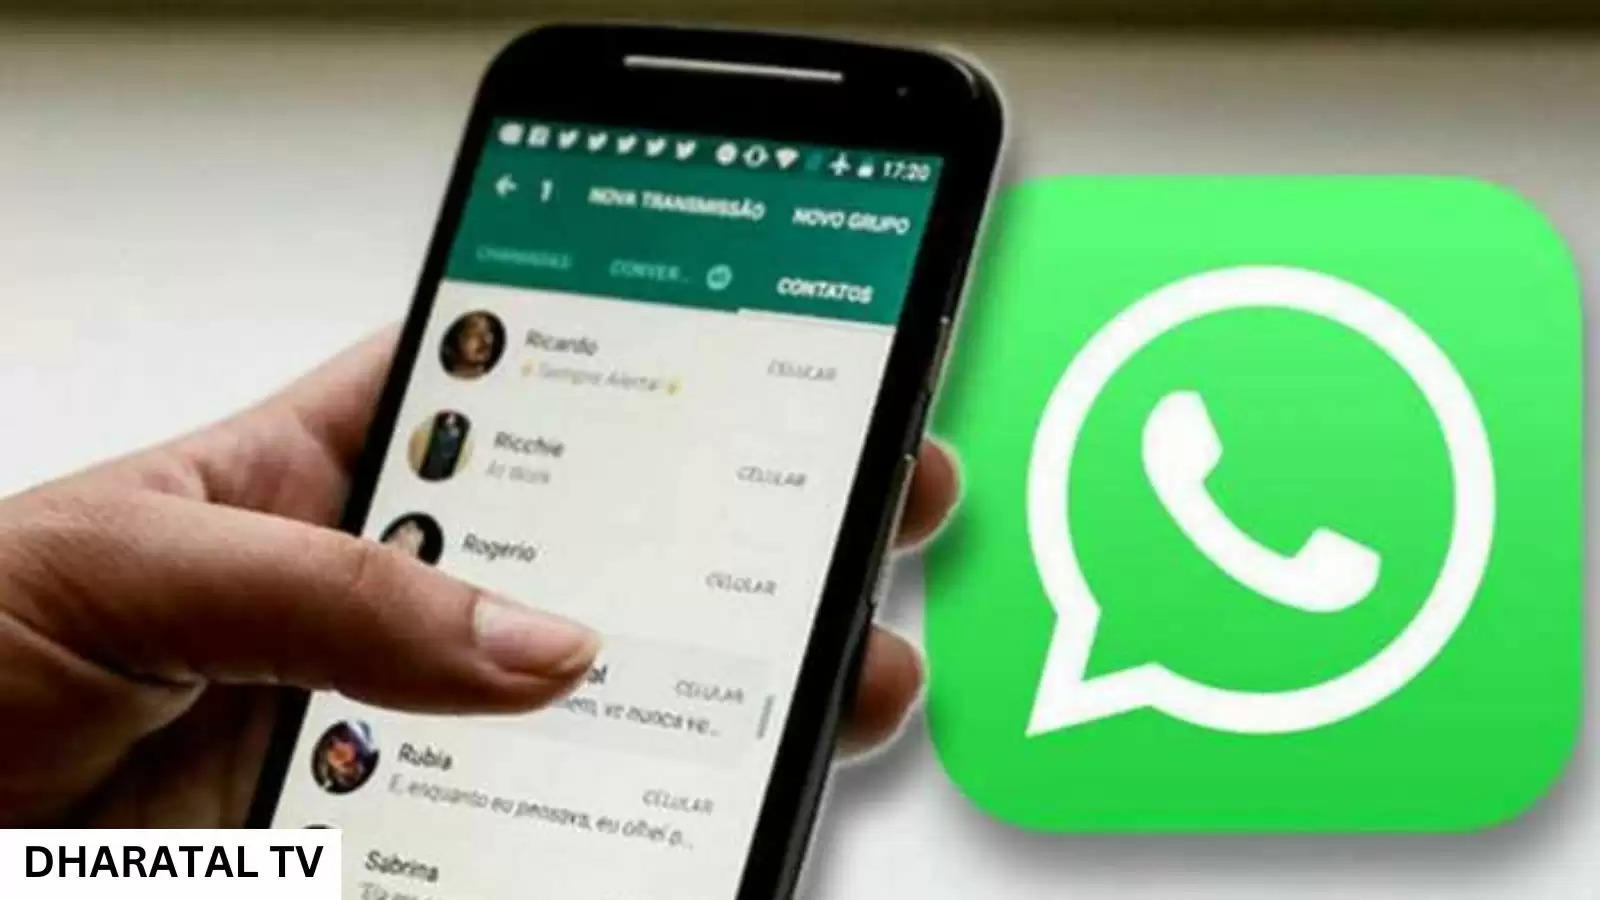 WhatsApp new updates